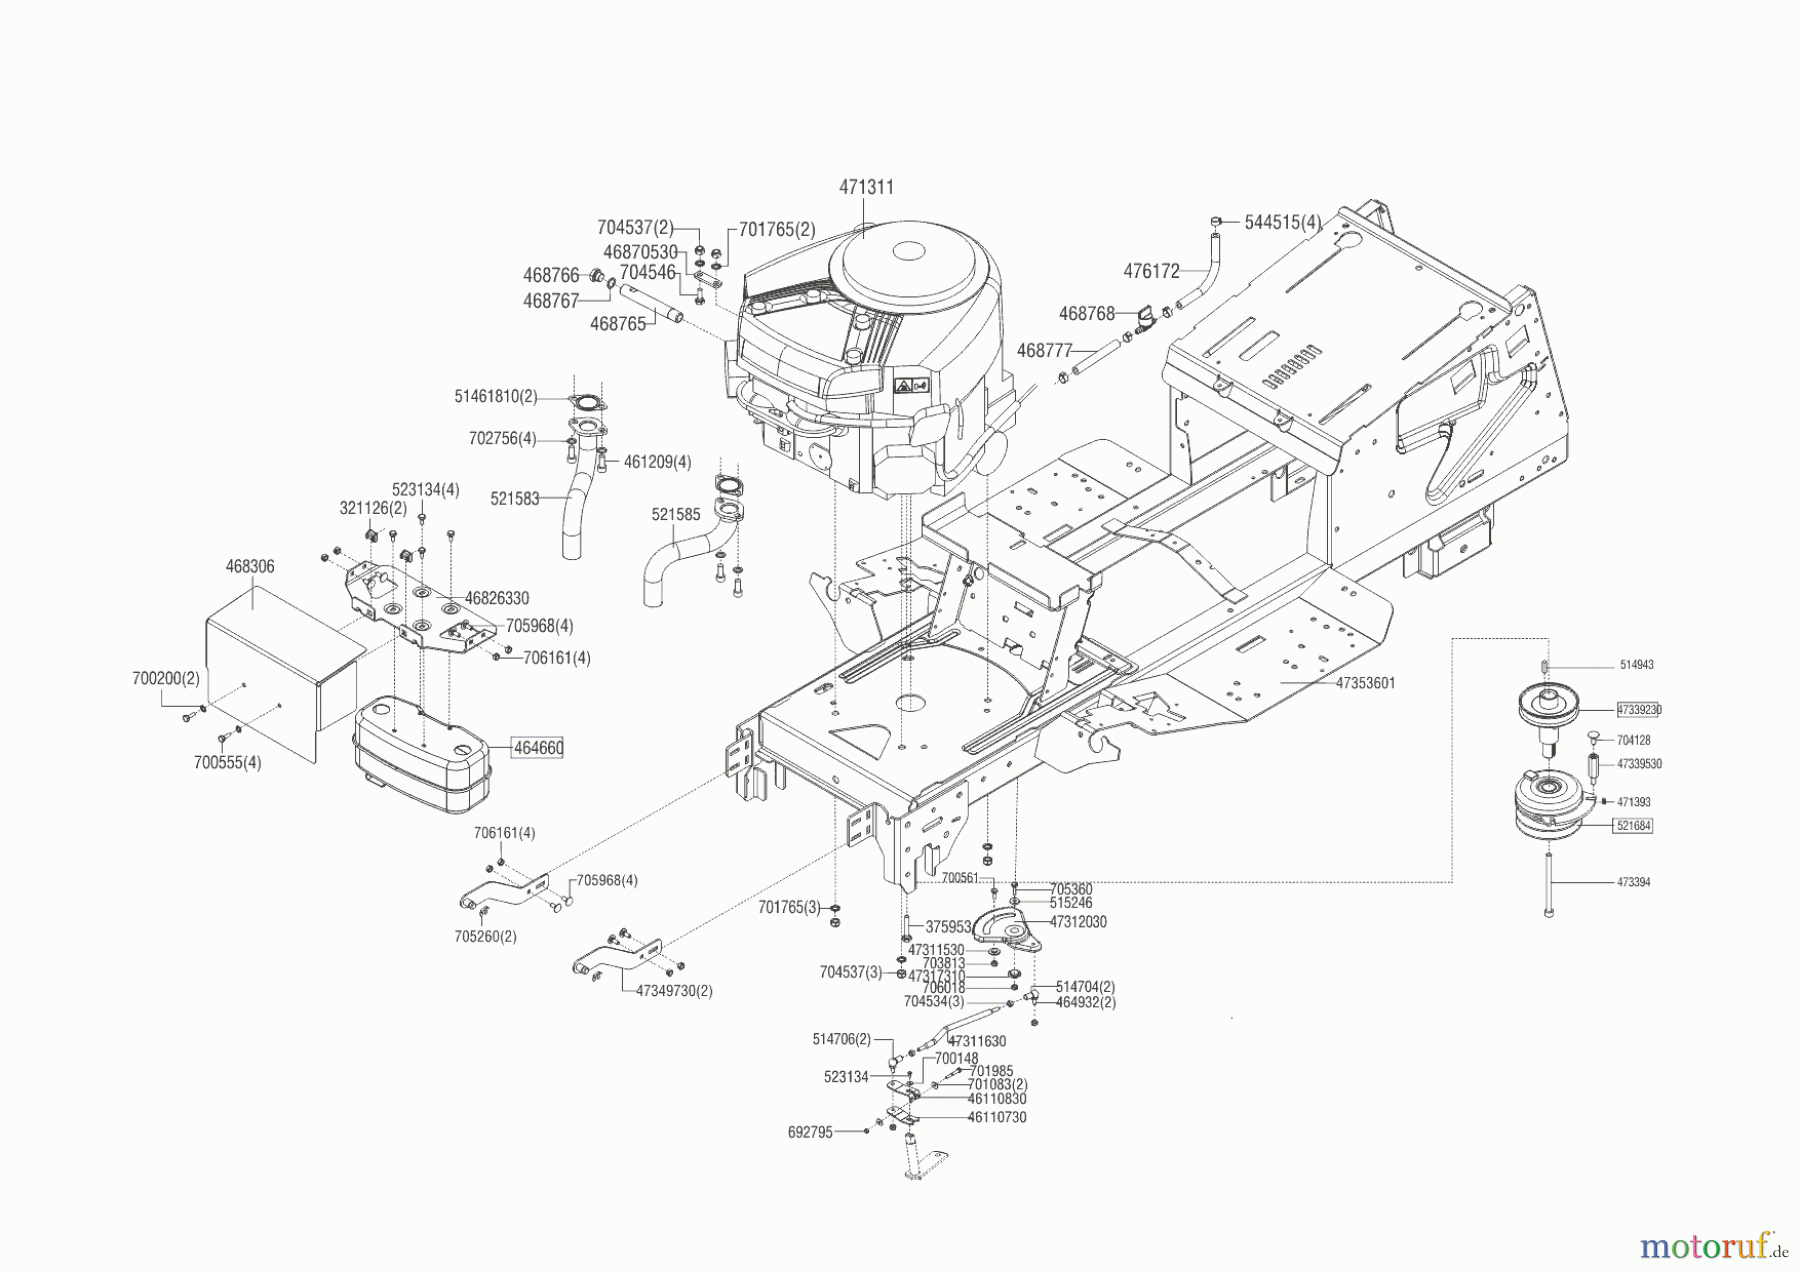  Powerline Gartentechnik Rasentraktor T 16-105.4 HD V2  ab 05/2016 Seite 2